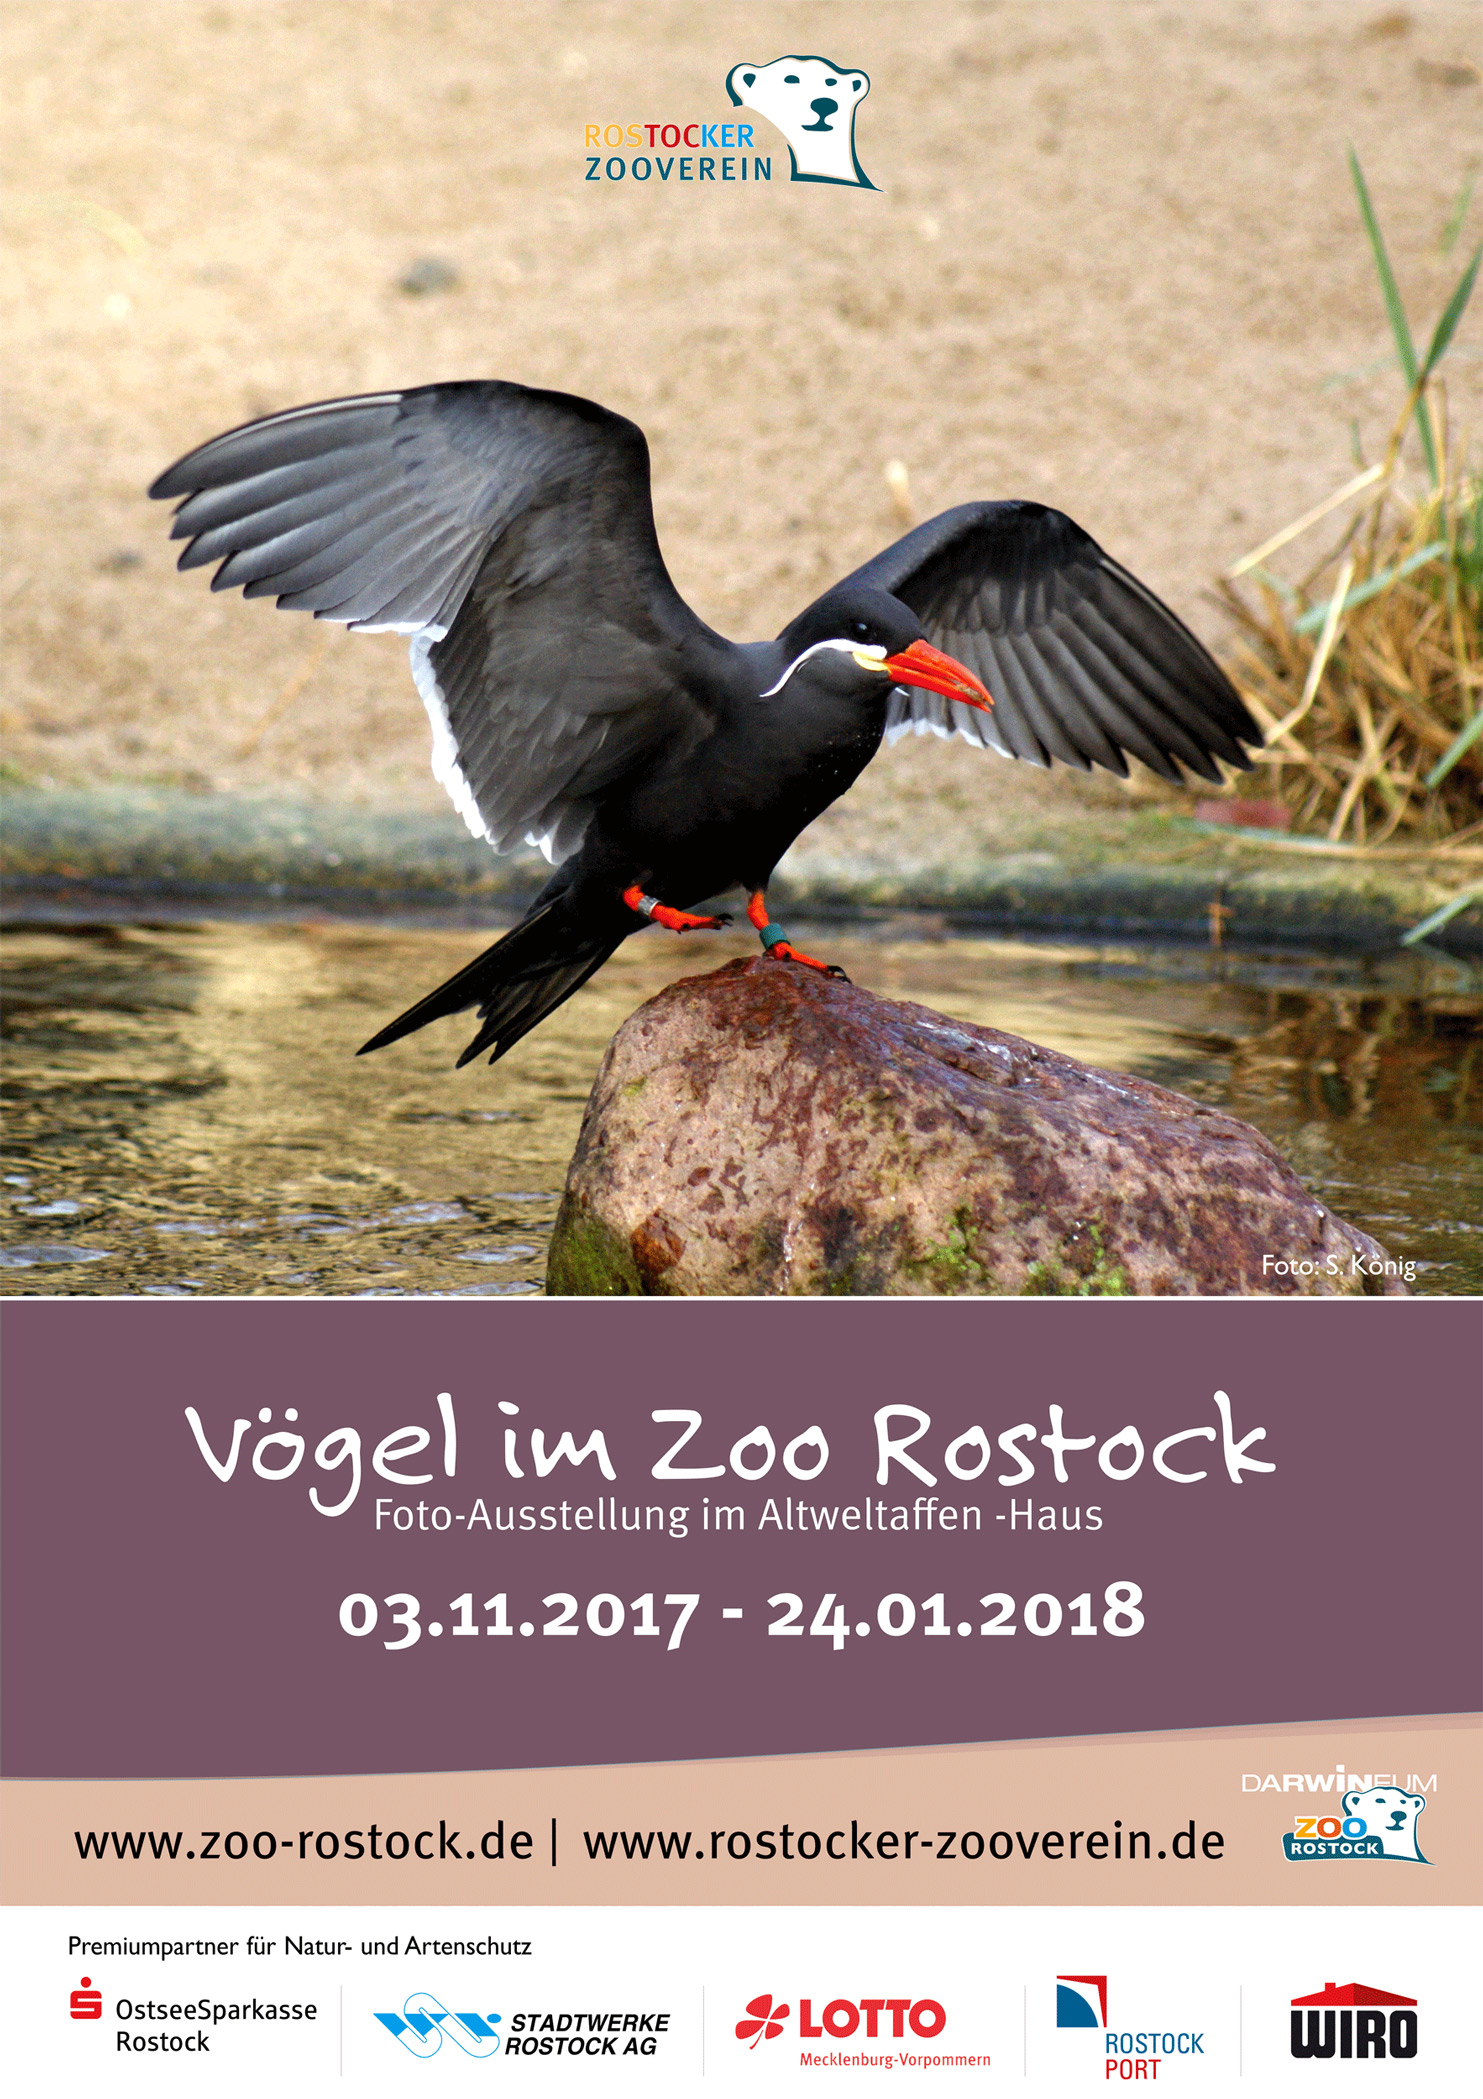 Plakat zur Ausstellung "Vögel im Zoo"